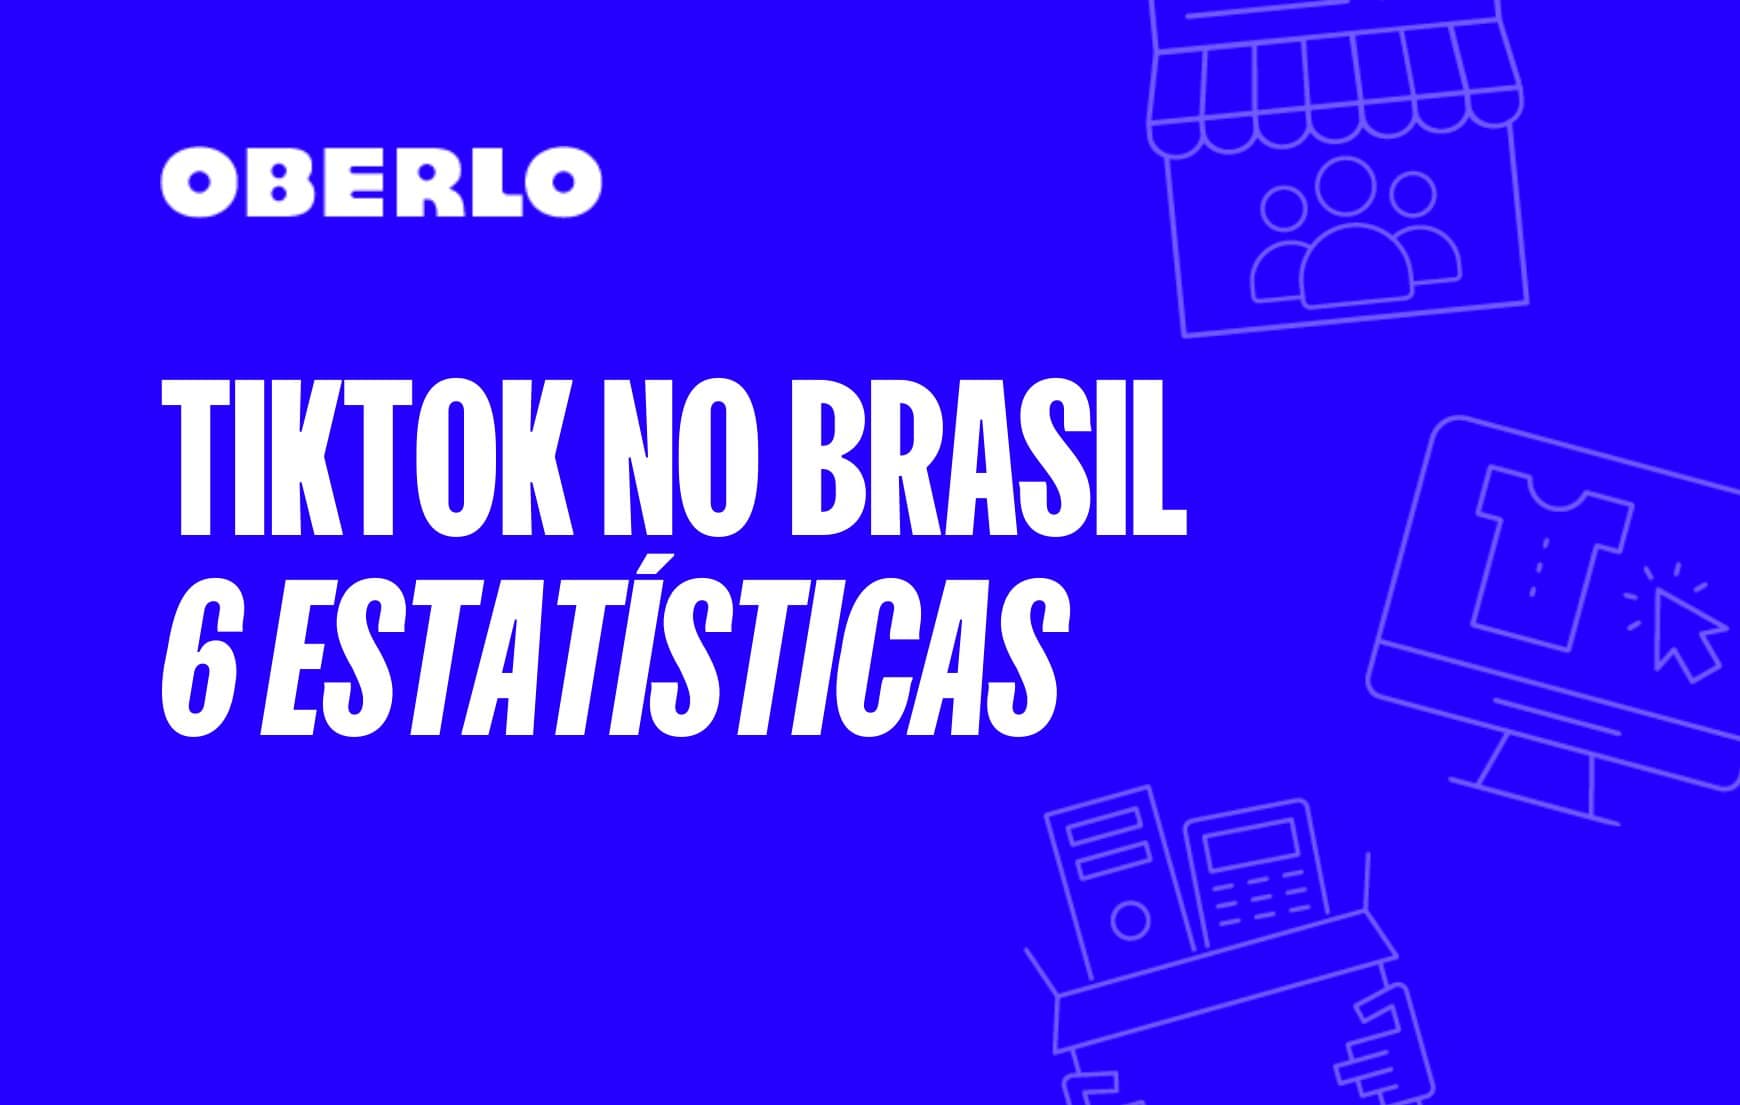 Nova rede social em números: TikTok no Brasil [INFOGRÁFICO] | Oberlo